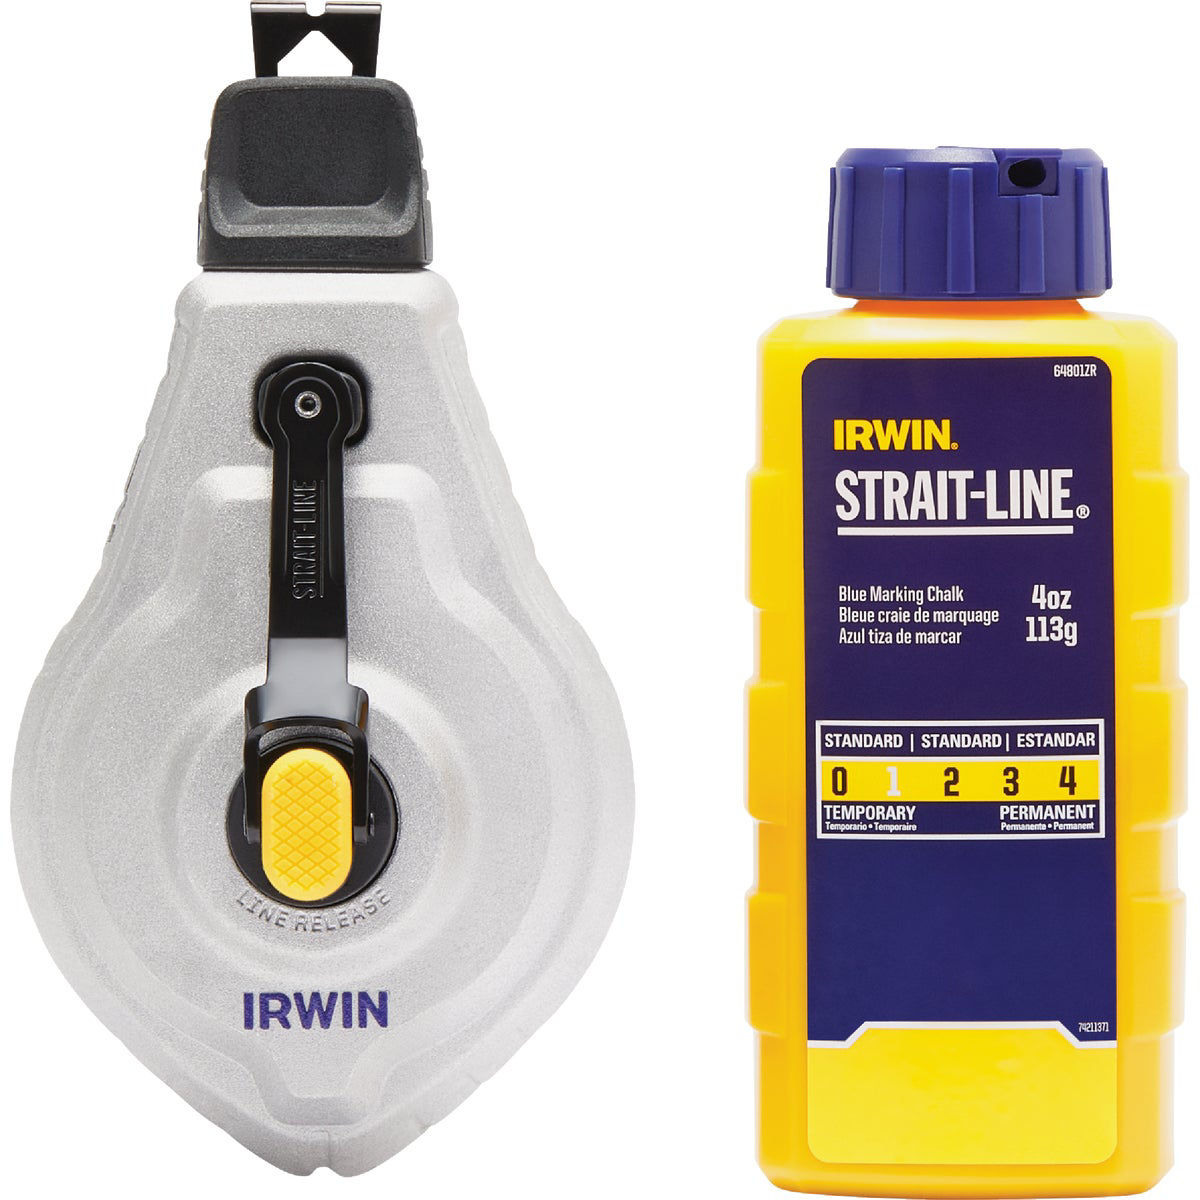 Irwin STRAIT-LINE Speed-Line 100 Ft. Chalk Line Reel and Chalk